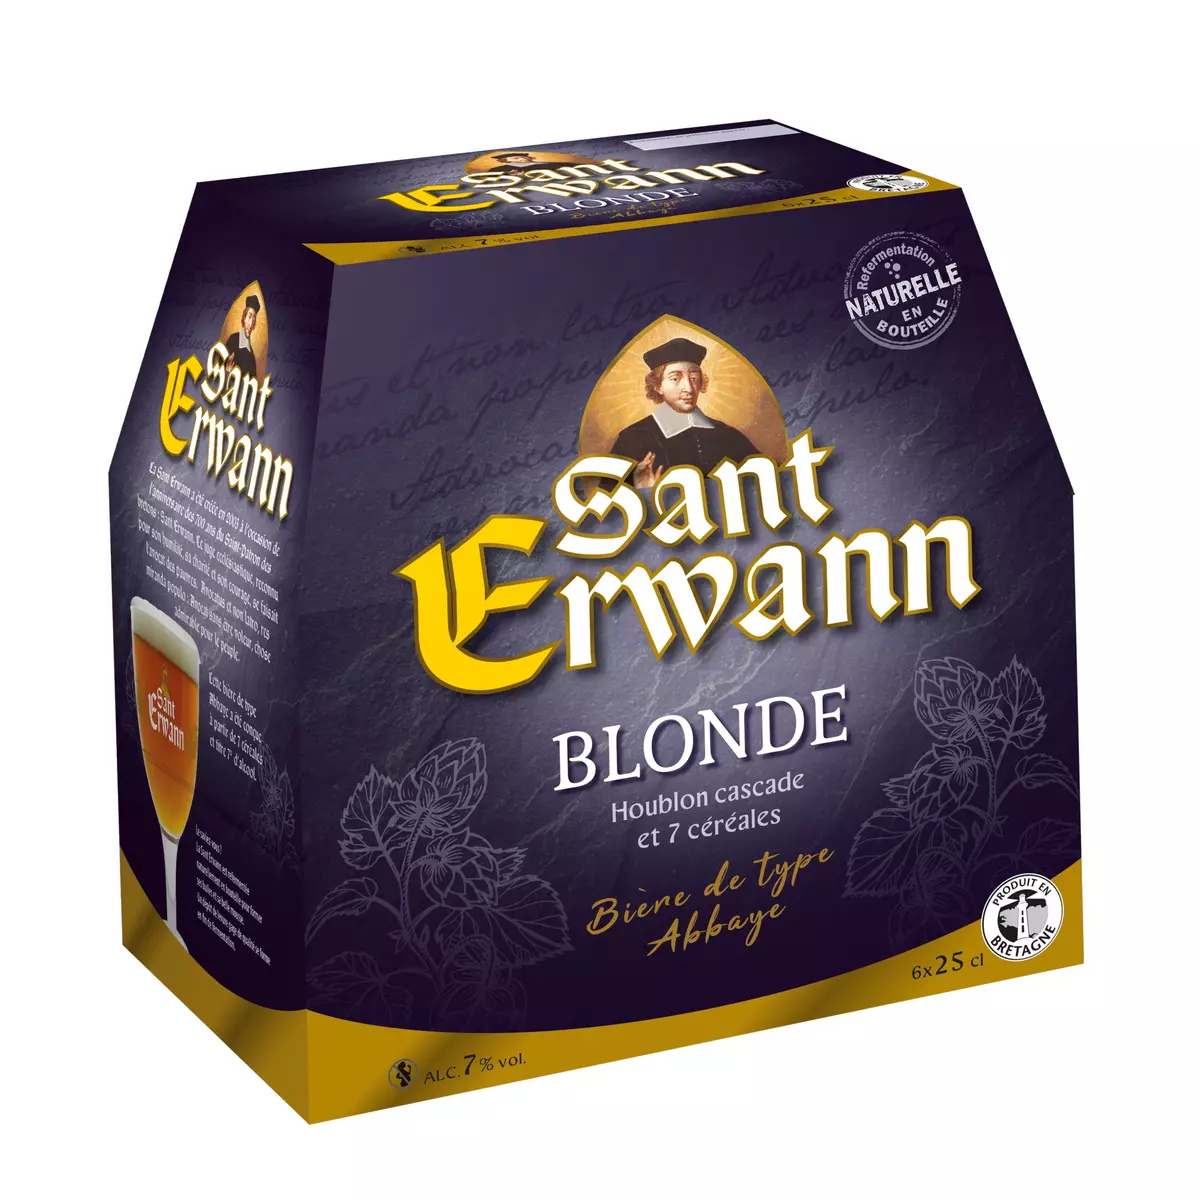 SANT ERWANN Bière blonde 7% bouteilles 6x25cl